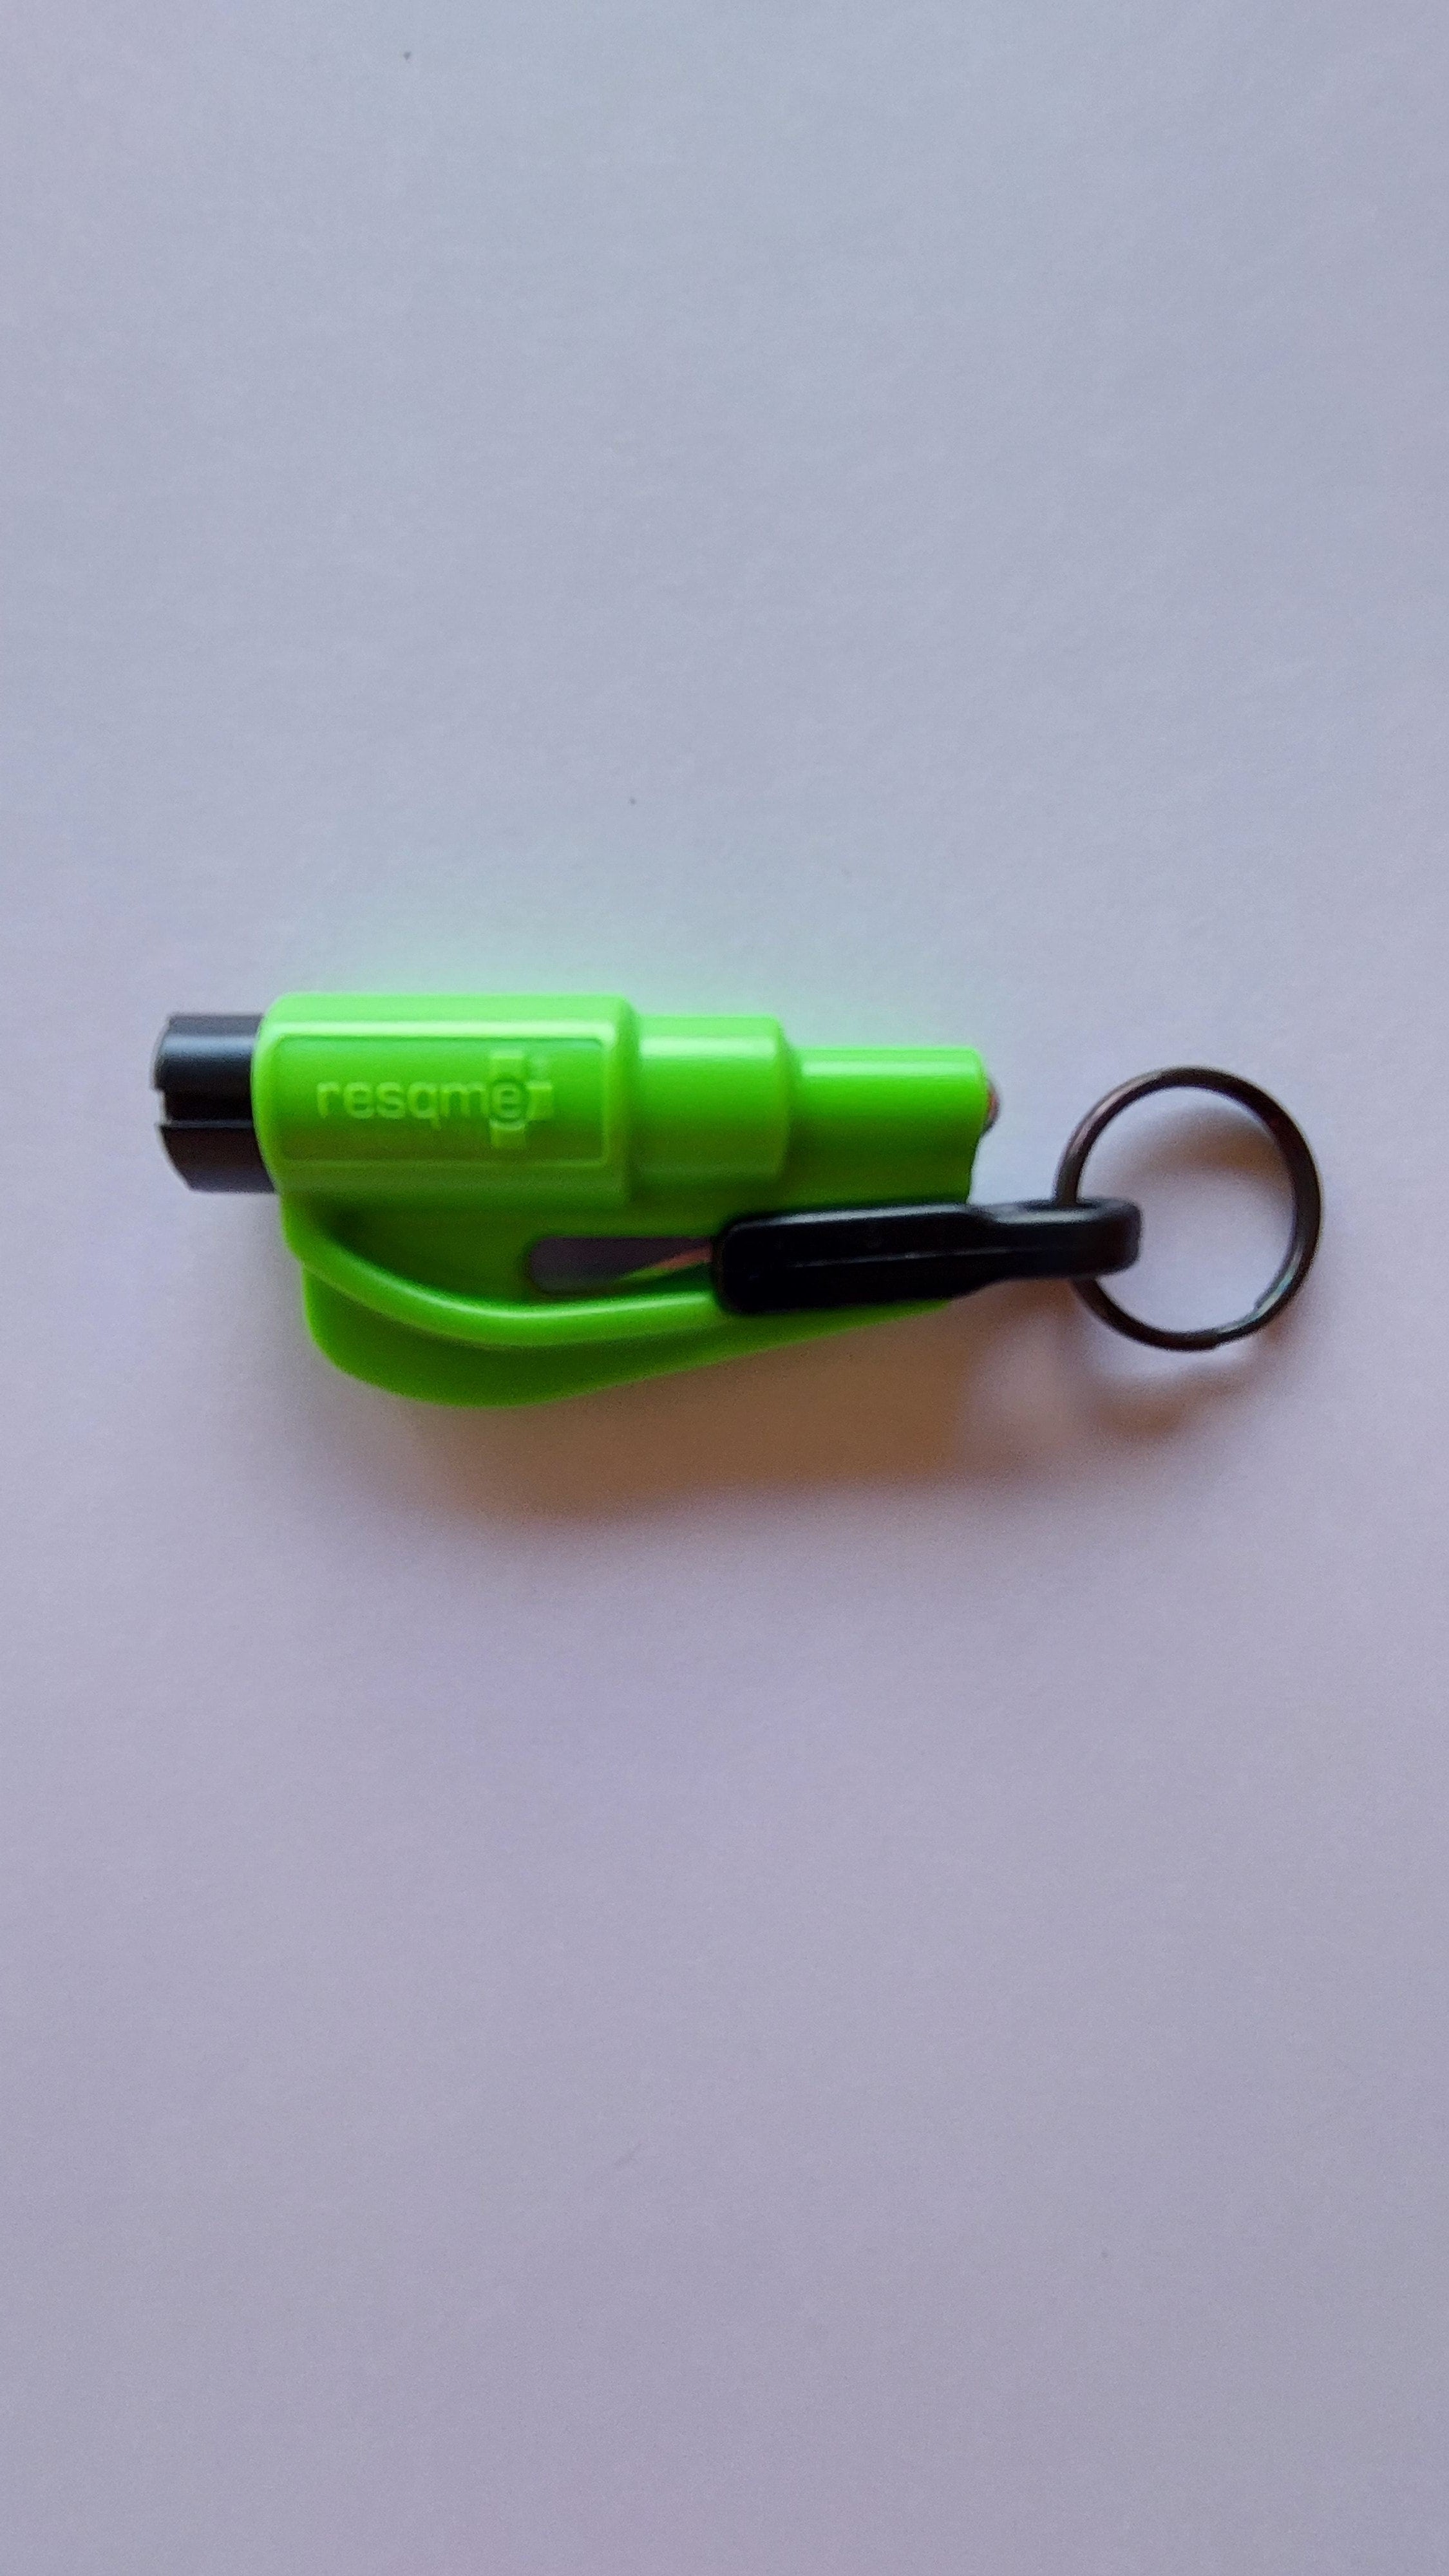 ResQme Car Escape Tool, Neon Green - REC